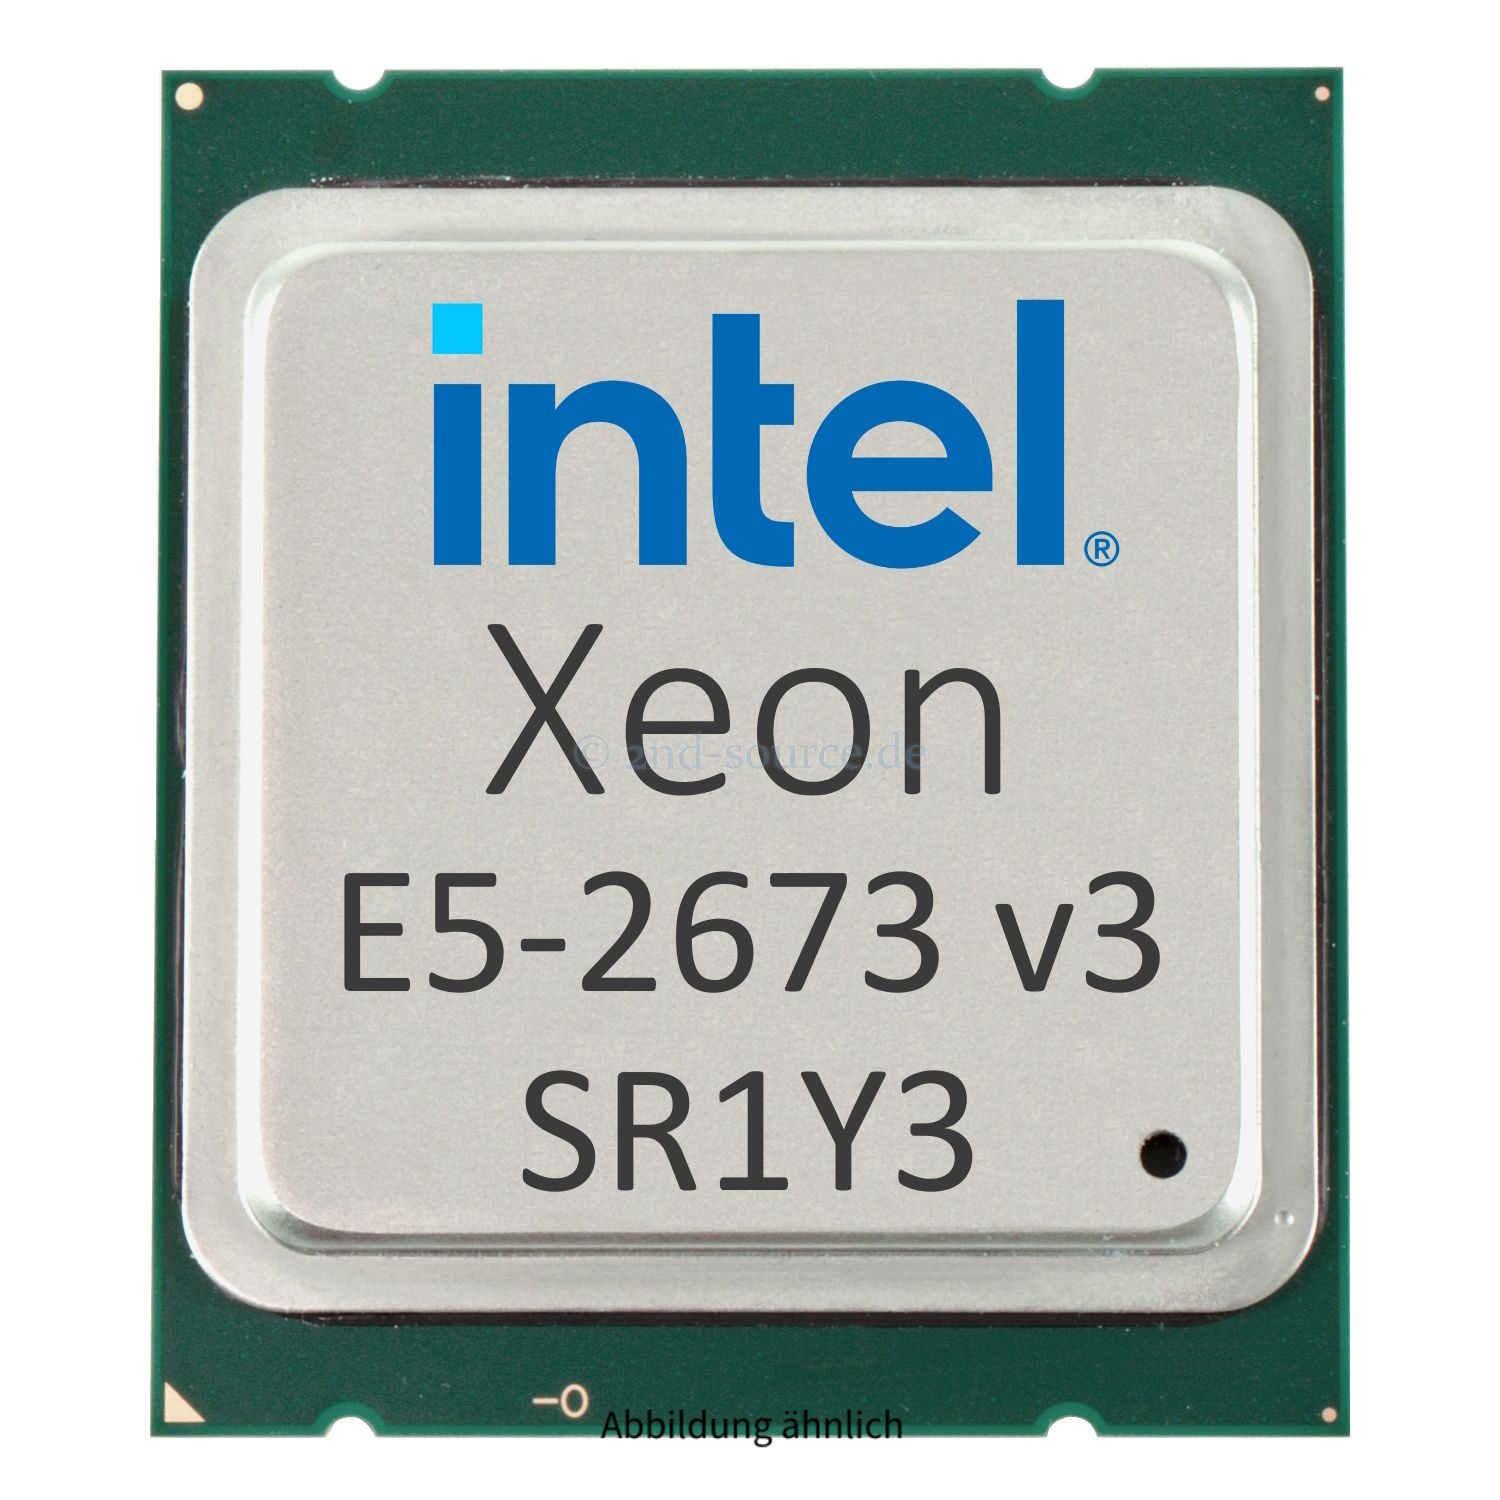 Intel Xeon E5-2673 v3 2.40 GHz 30MB 12-Core CPU 105W SR1Y3 CM8064401610200